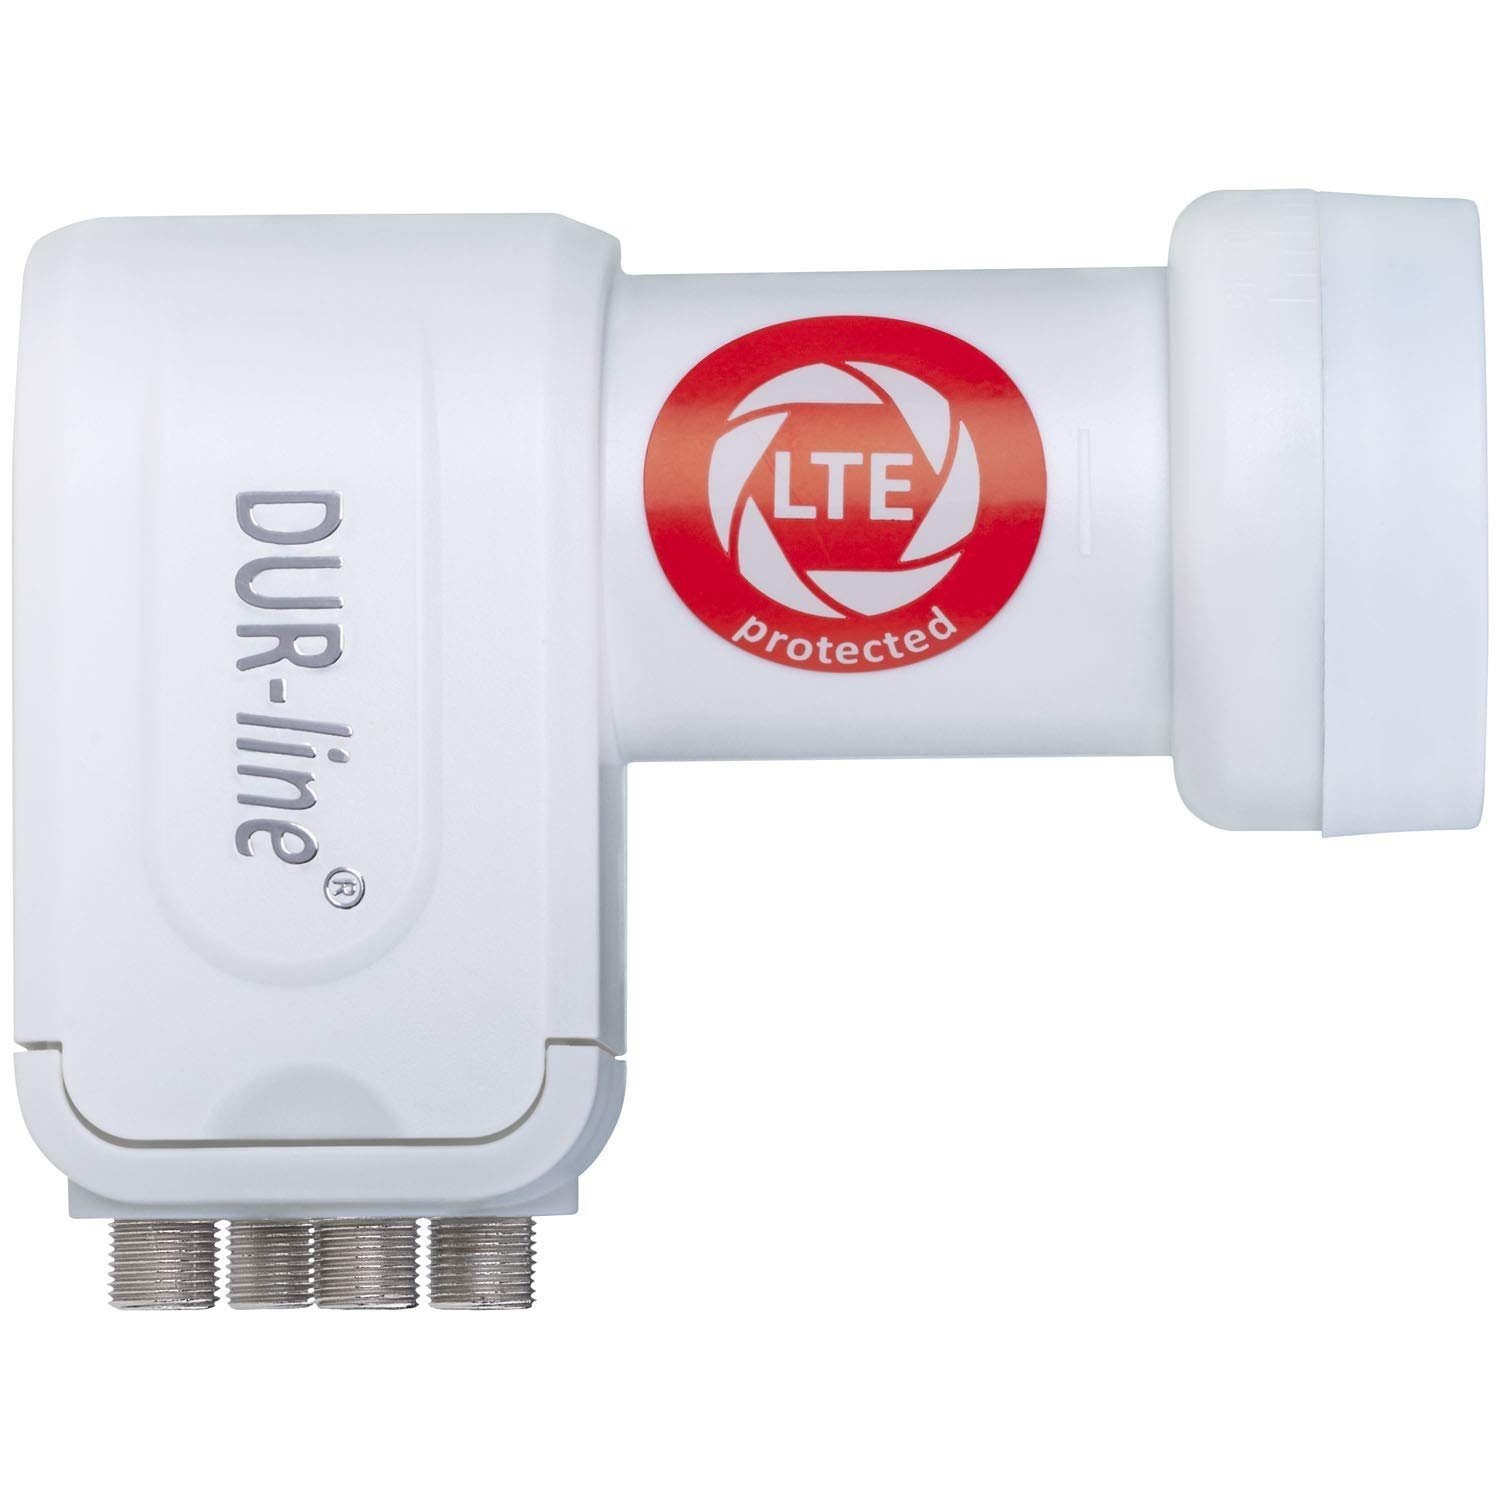 Universal-Quad-LNB DUR-line DUR-line Quad LTE-Filter +Ultra mit [ weiß - 4 - Teilnehmer LNB Test